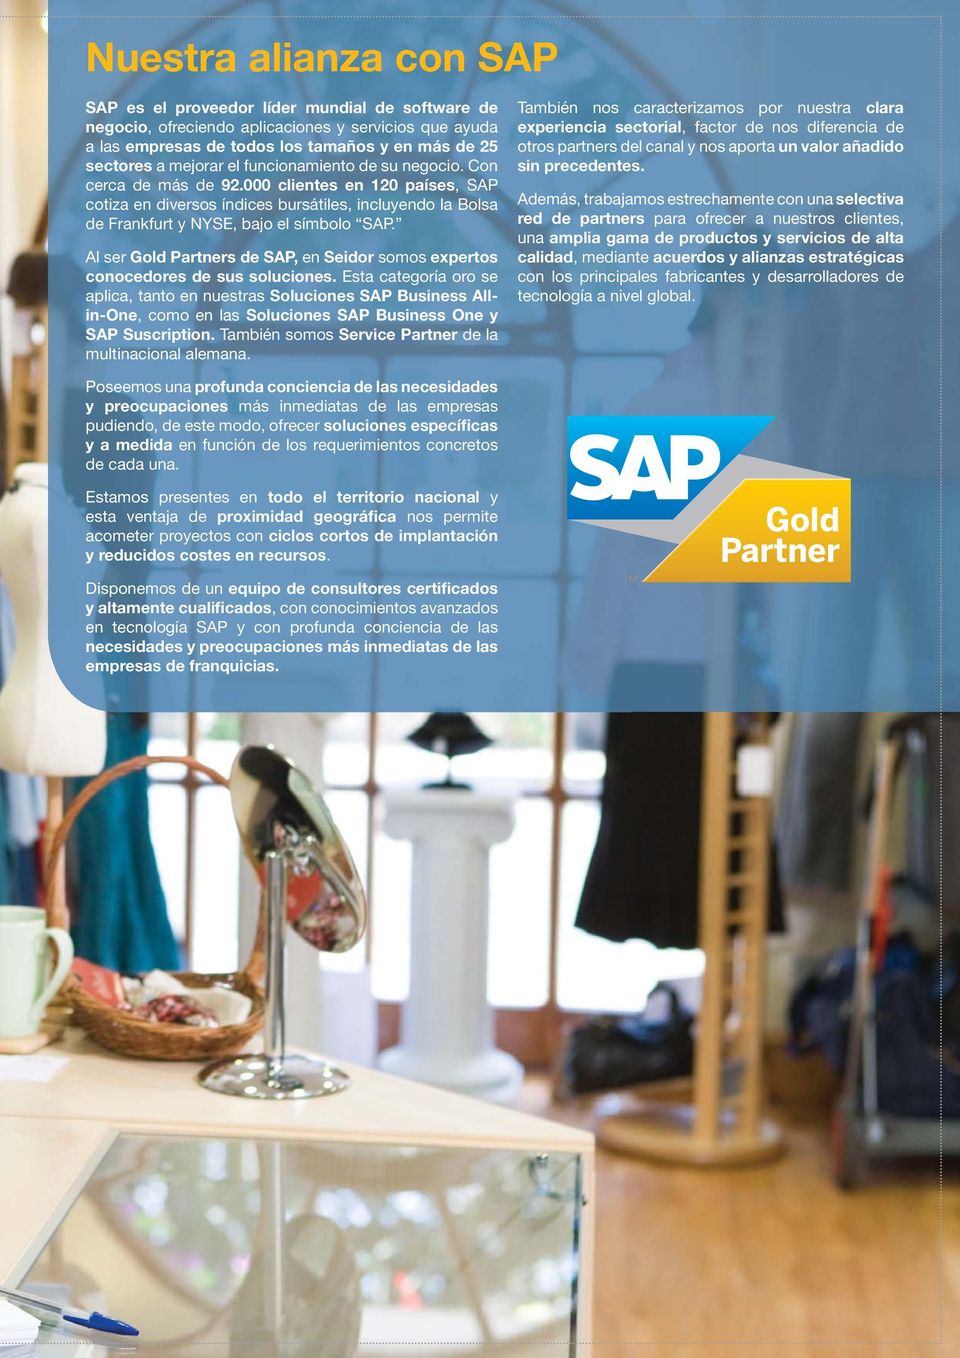 Al ser Gold Partners de SAP, en Seidor somos expertos conocedores de sus soluciones.